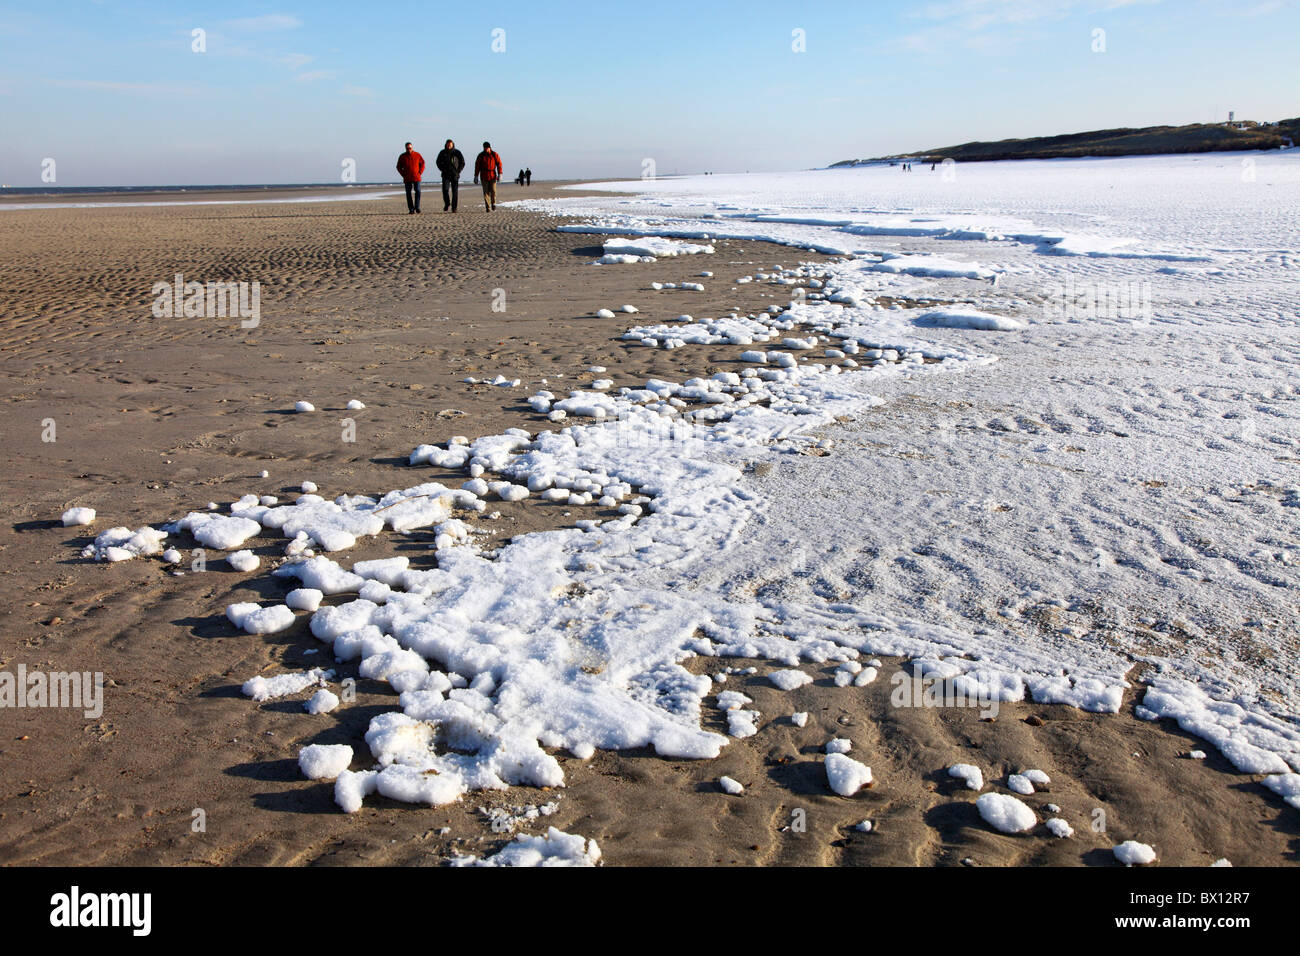 Winterzeit, Menschen am Strand, Wandern. Nordsee Insel Spiekeroog, Osten Watteninsel an der Nordwestküste von Deutschland. Stockfoto